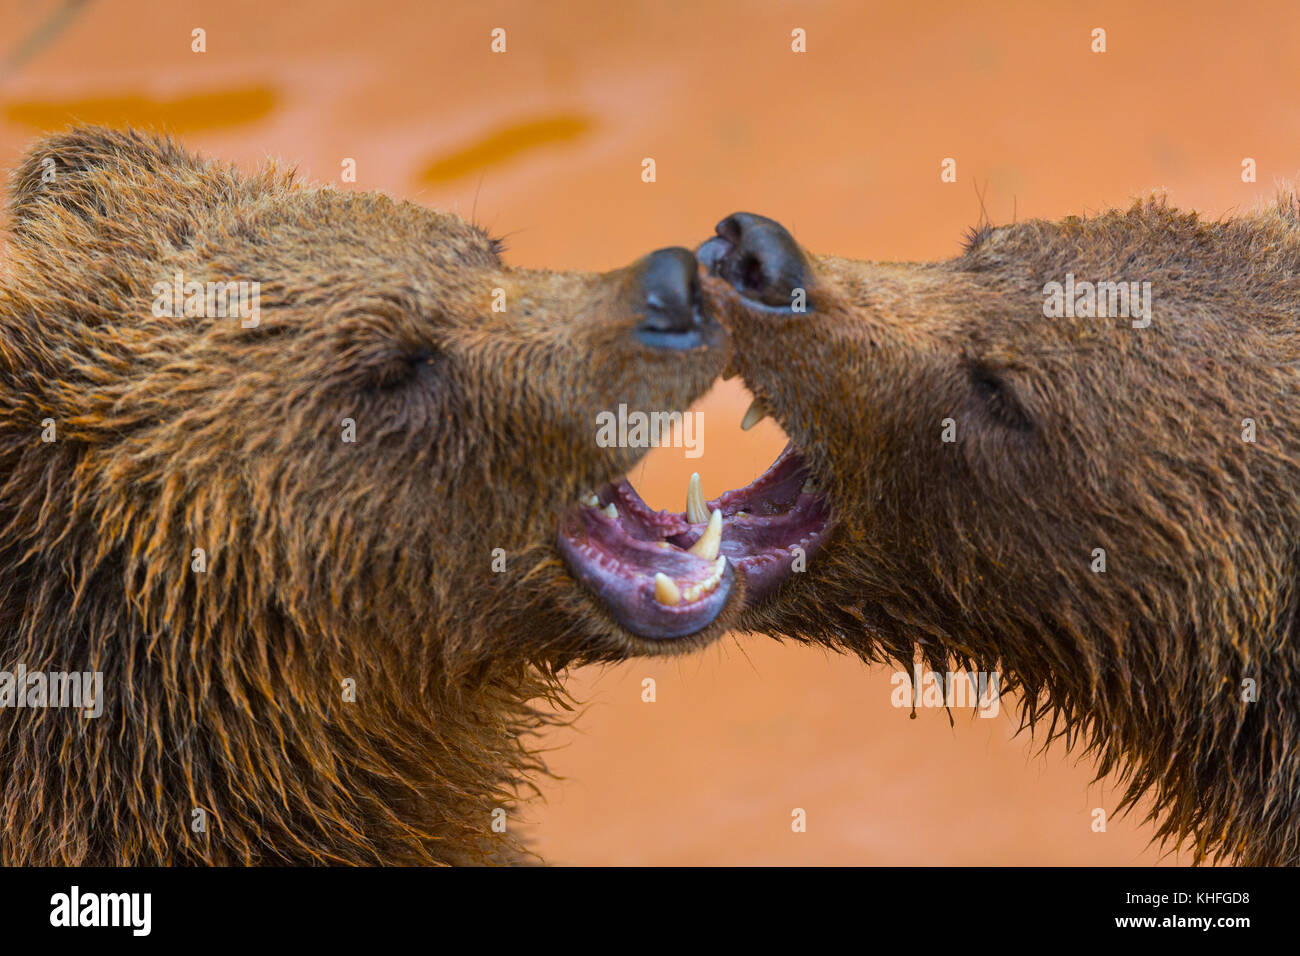 Brown bear (Ursus arctos) Stock Photo